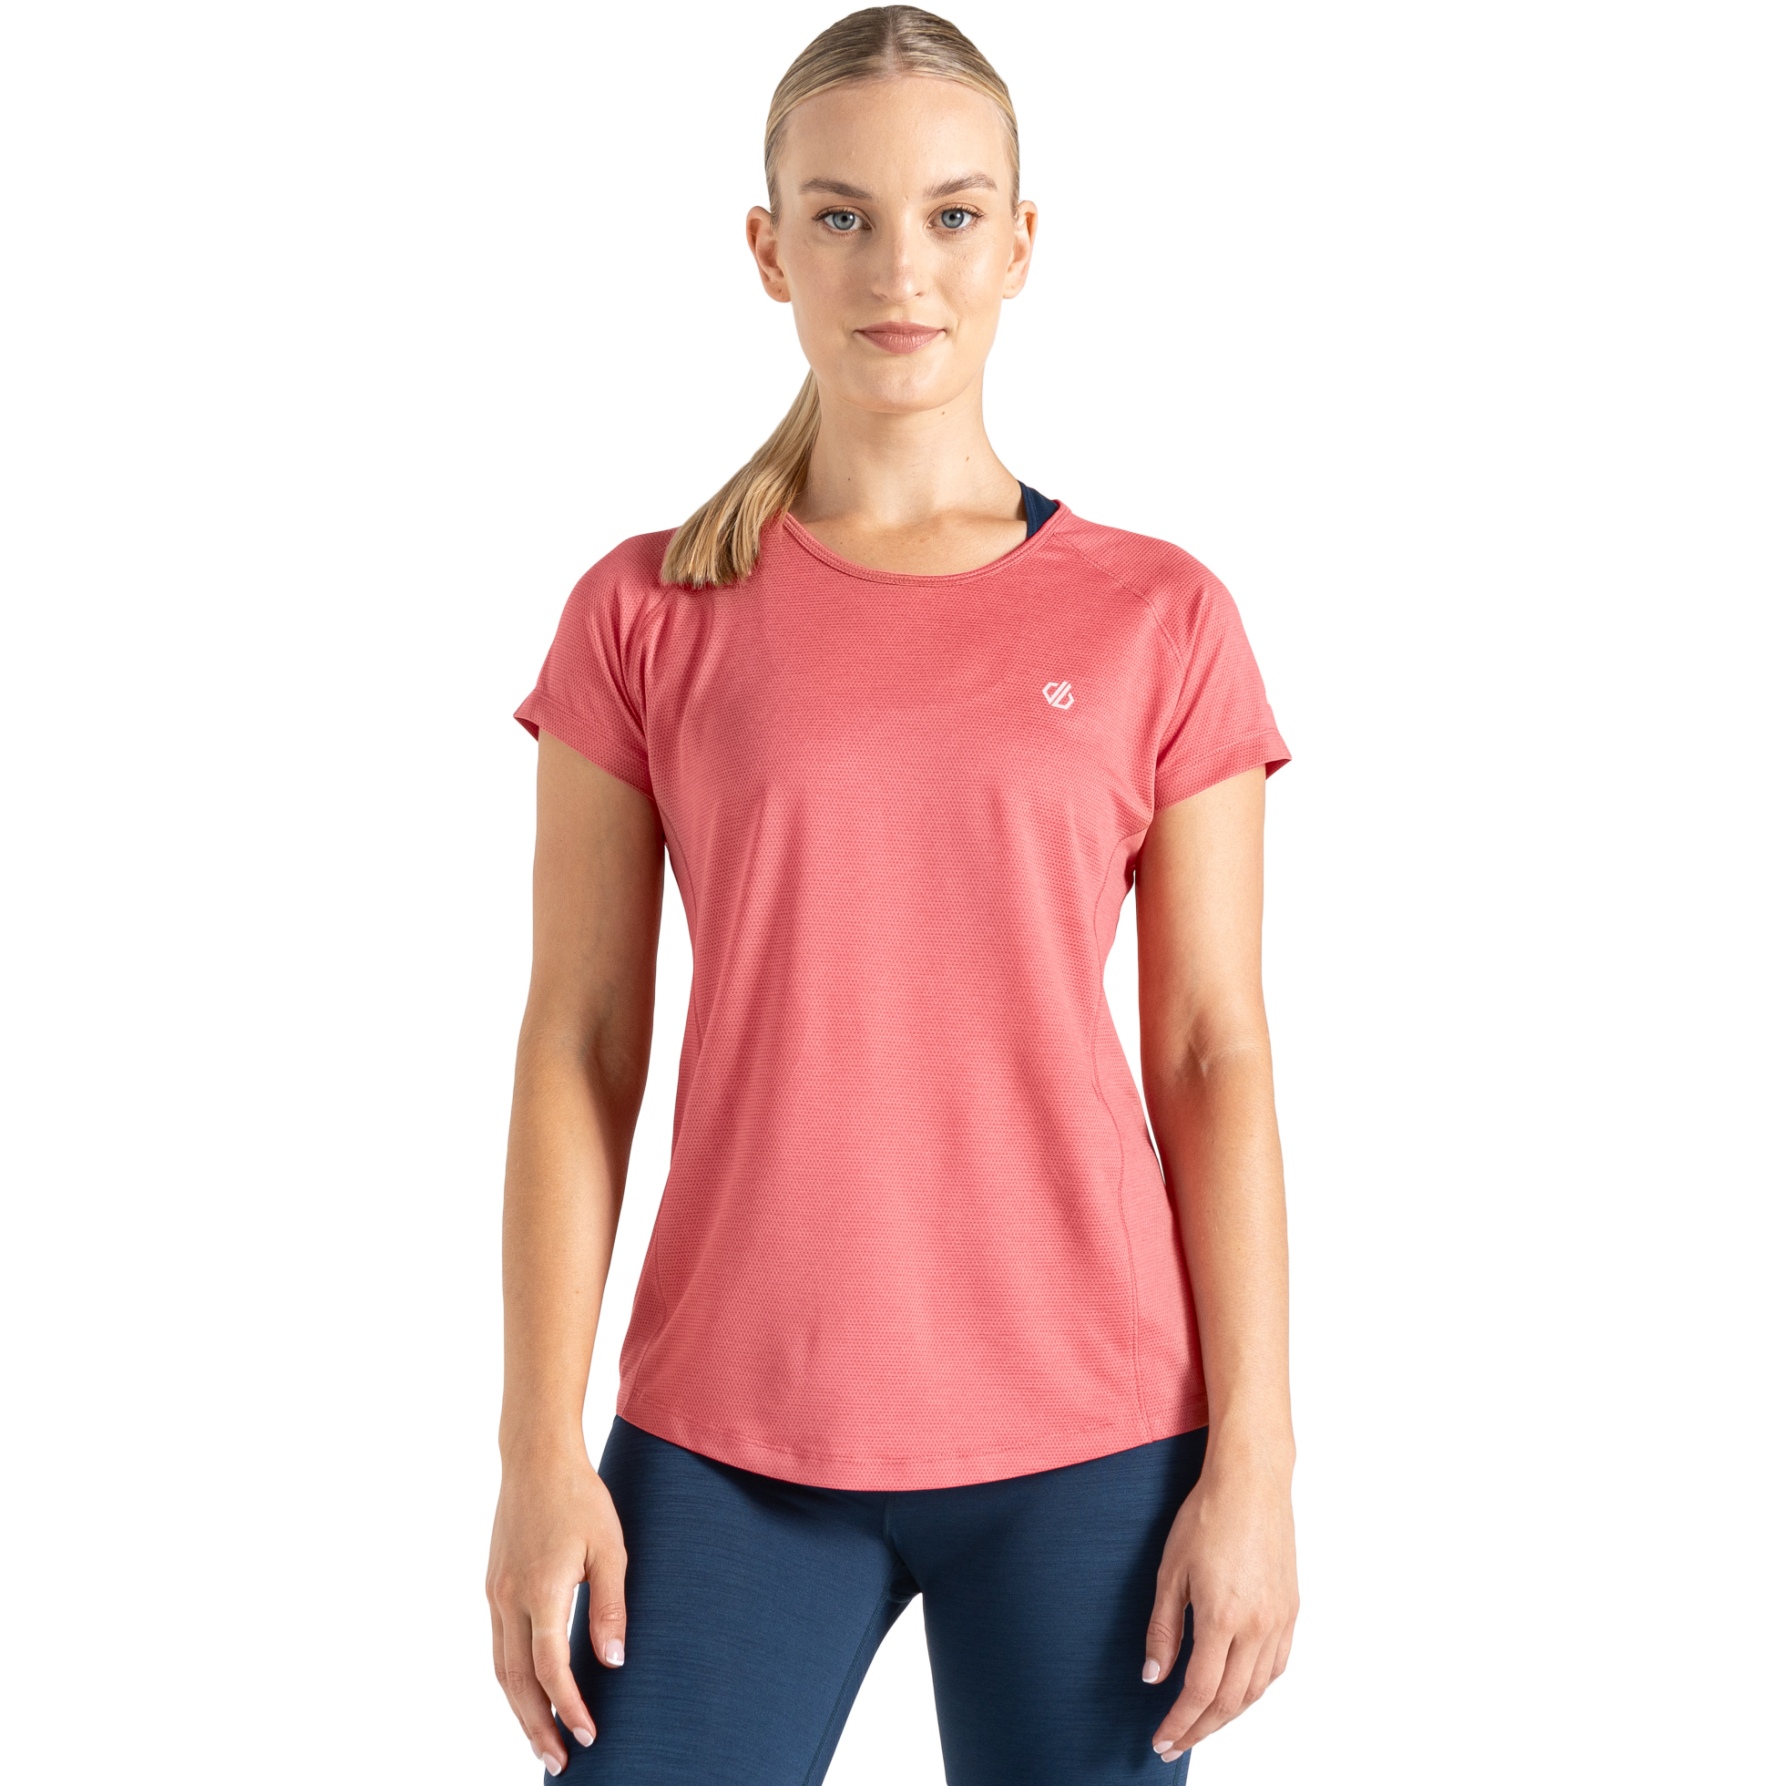 Produktbild von Dare 2b Corral T-Shirt Damen - HUM Sorbet Pink Marl